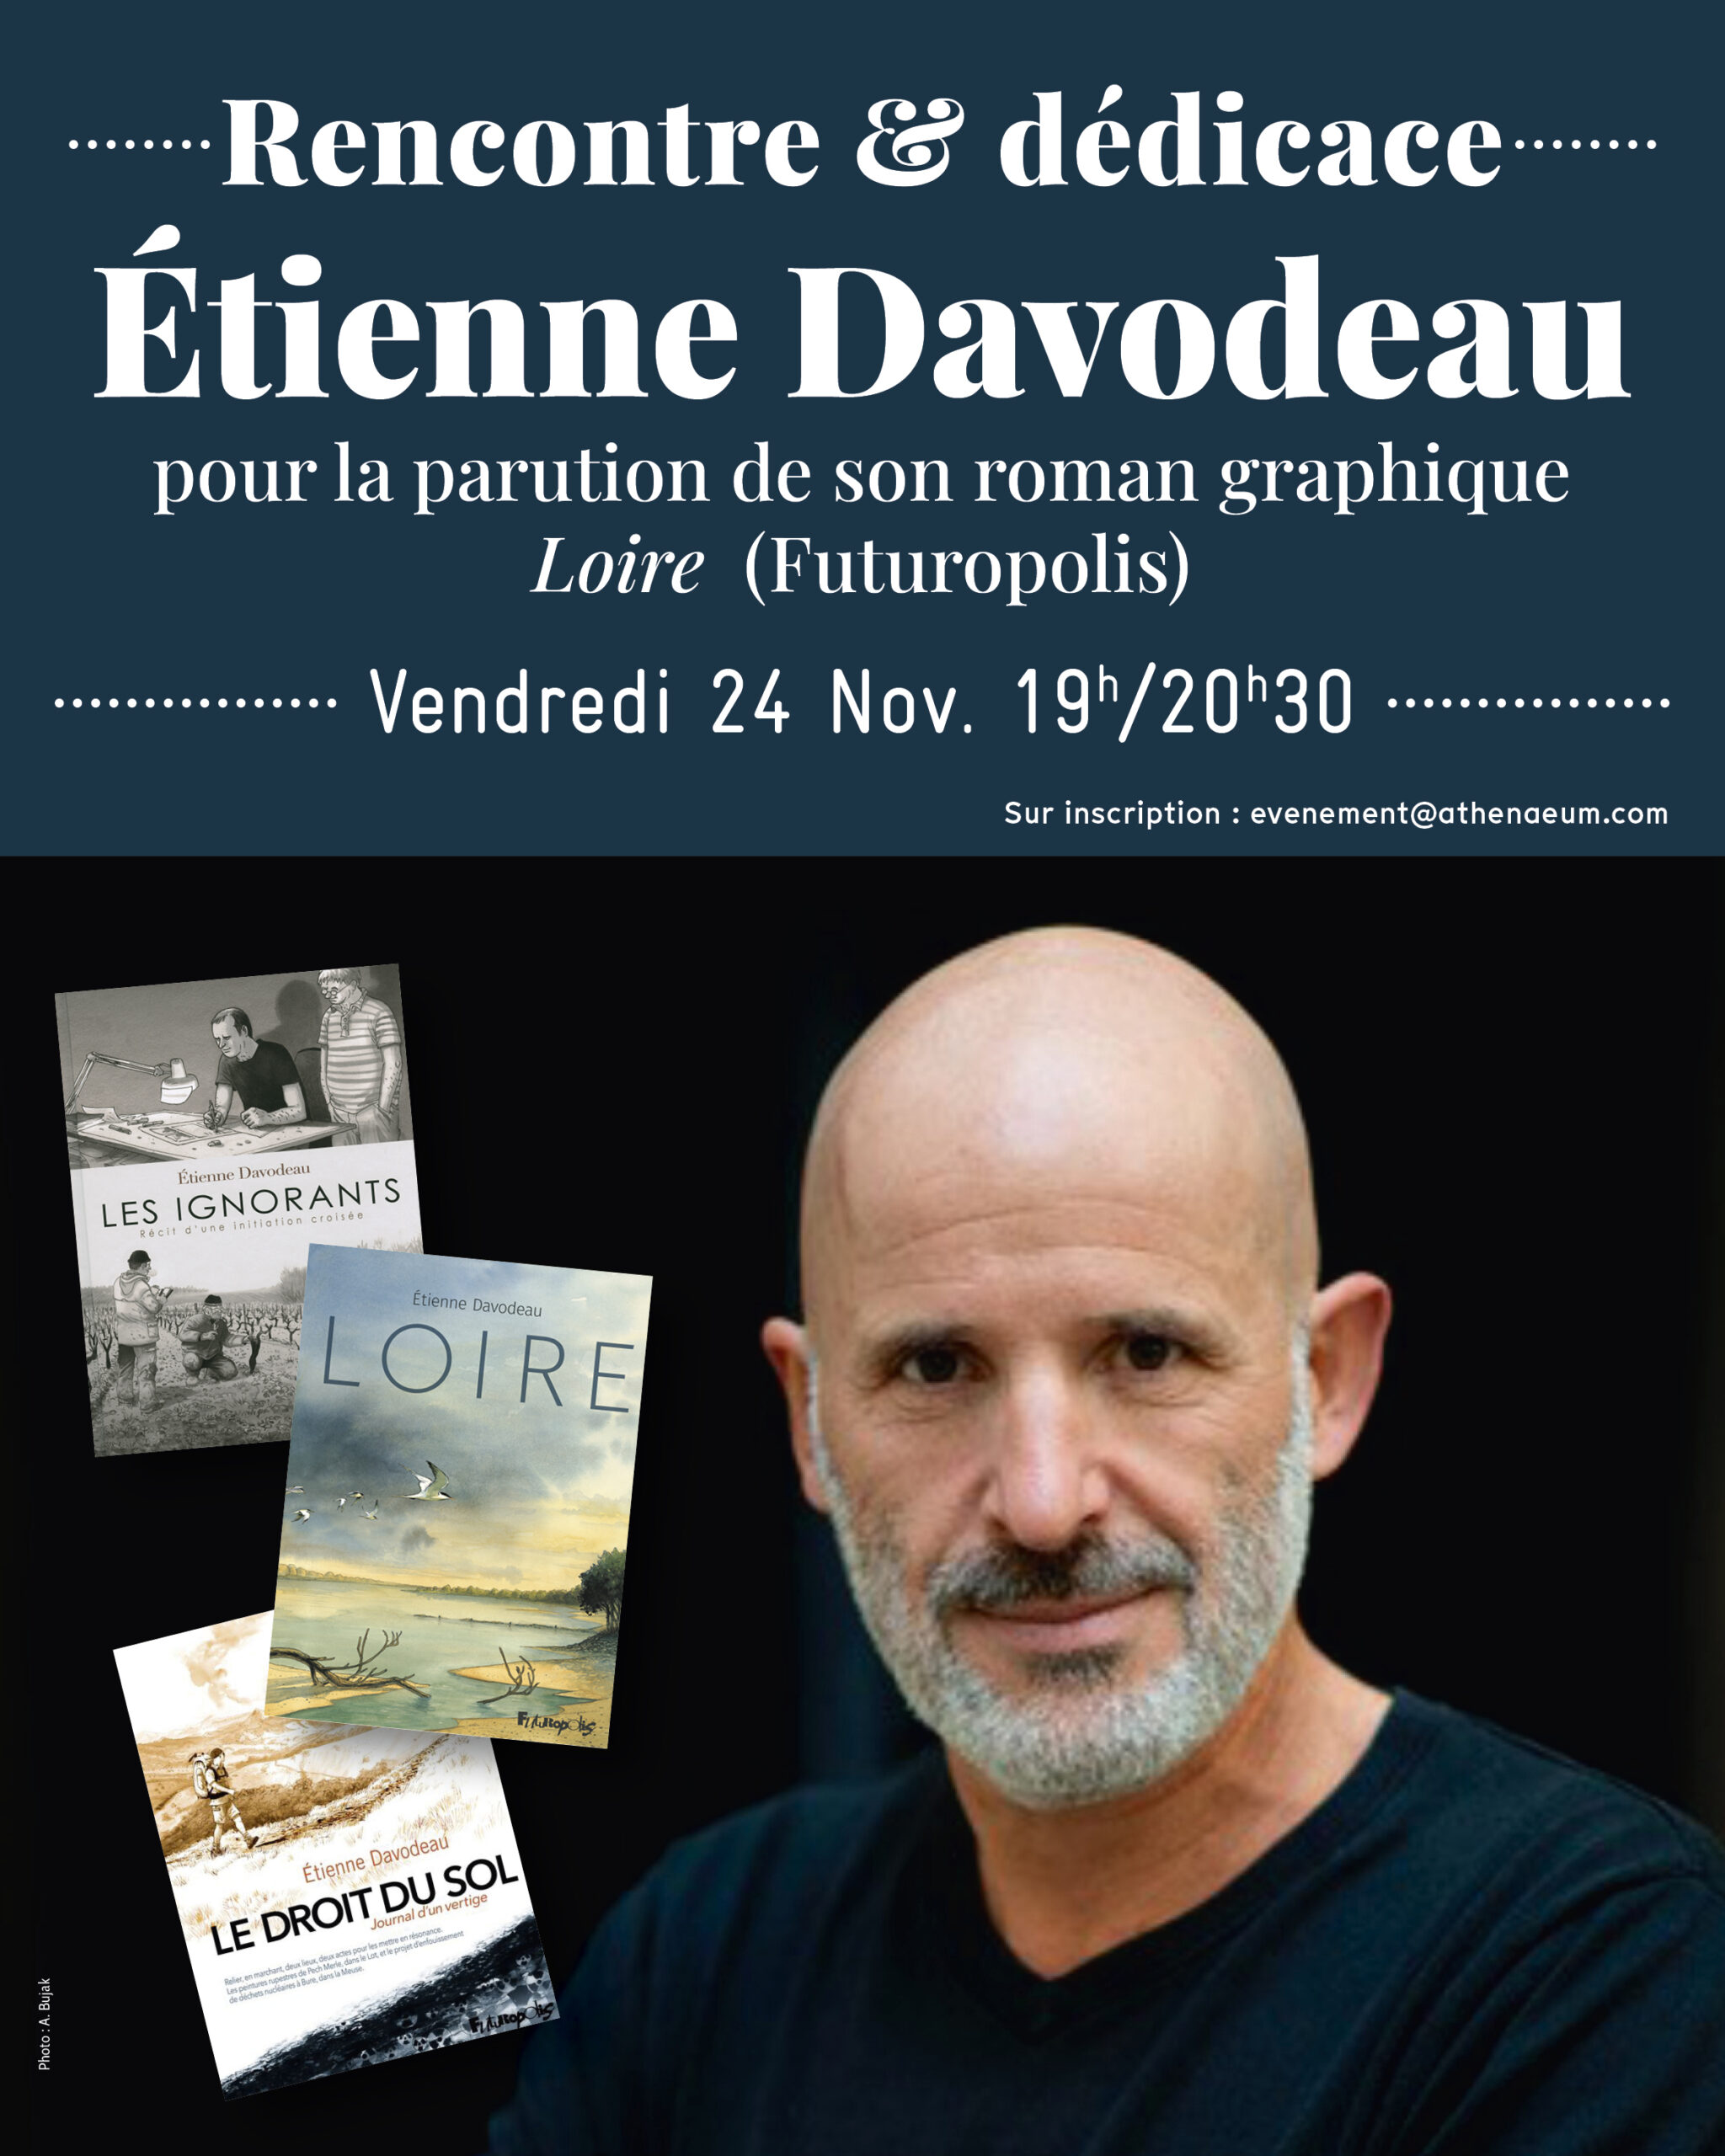 Rencontre et dédicace avec Etienne Davodeau, vendredi 24 novembre à 19h